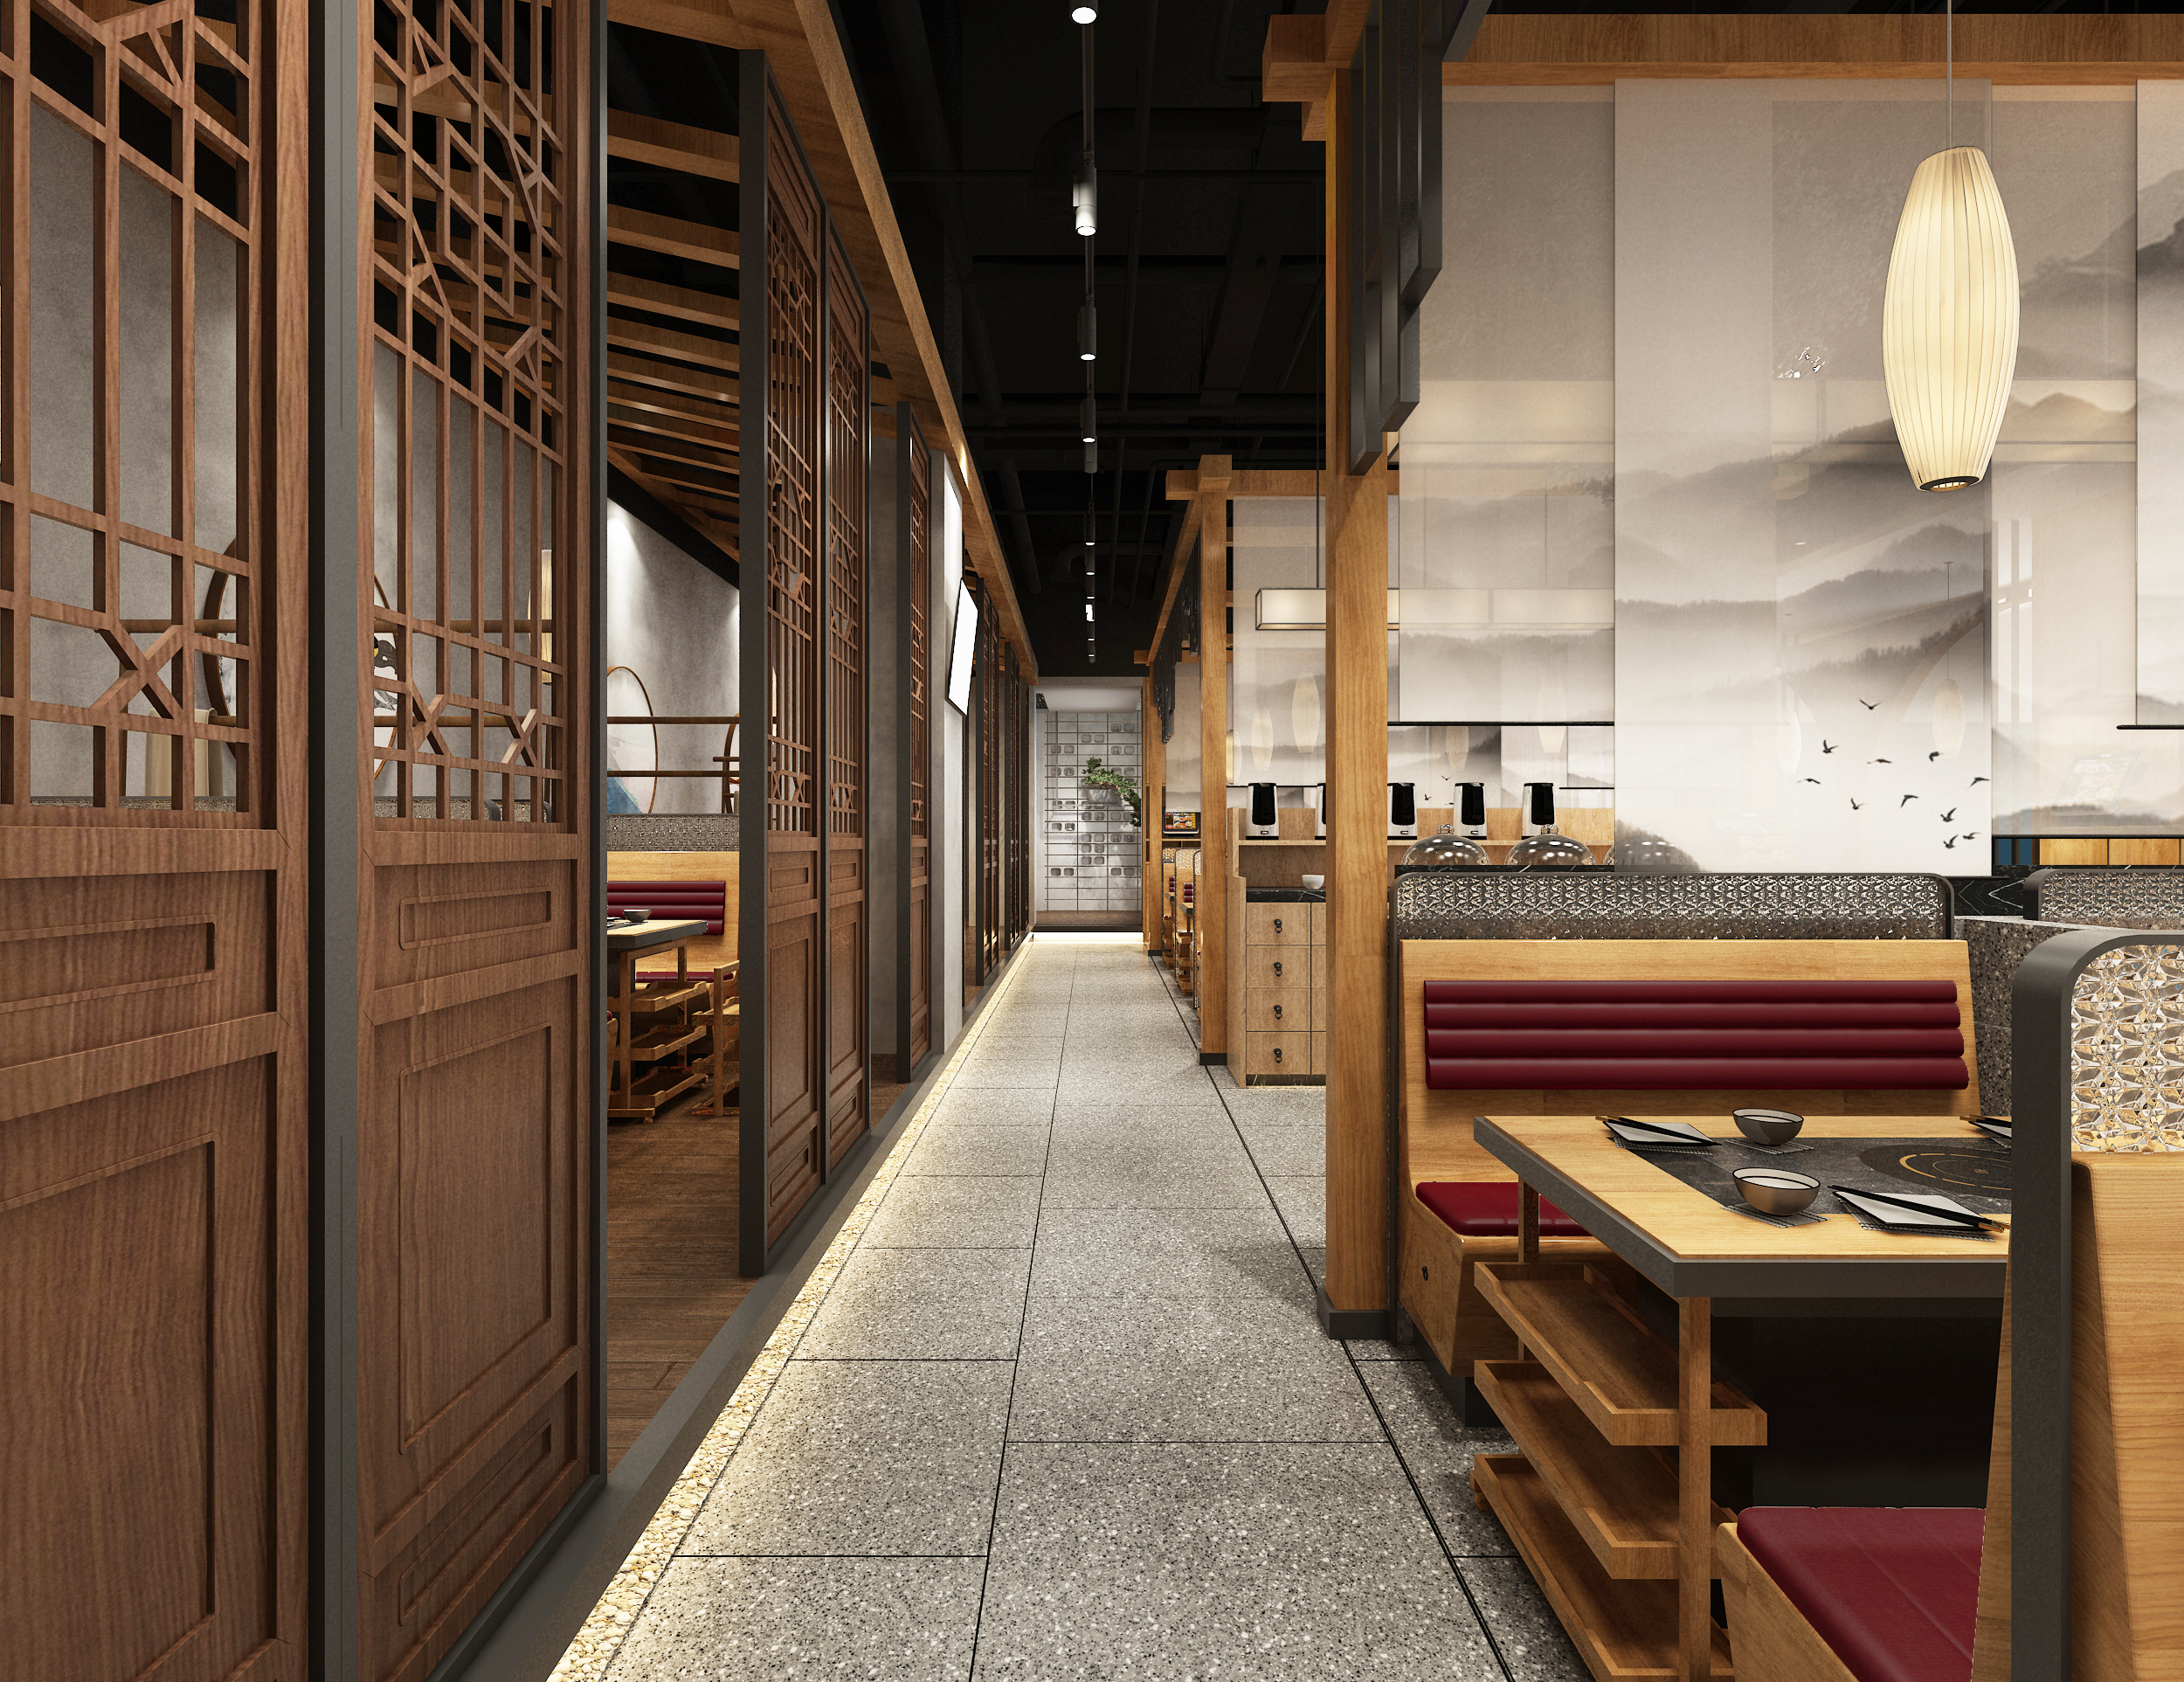 新中式风格餐饮店装修效果图